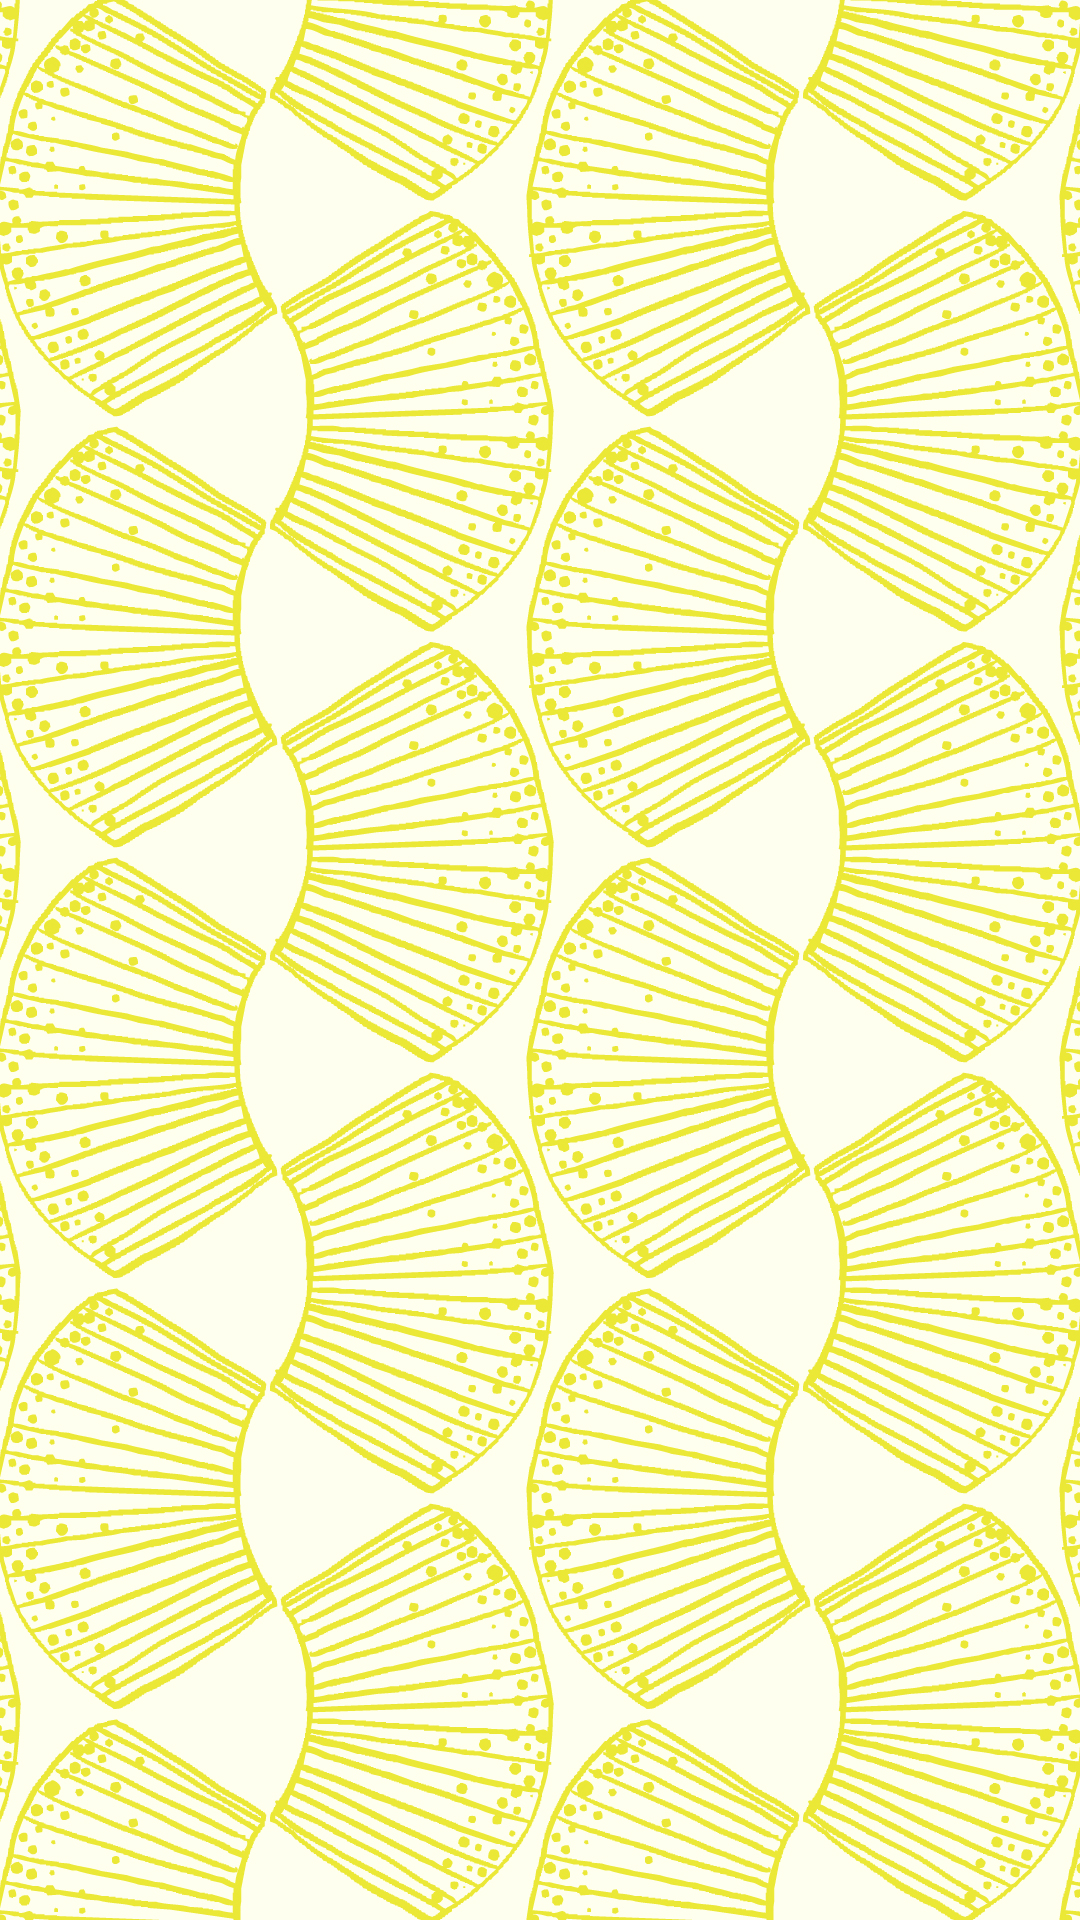 クリーム色の背景に黄色のパイナップル柄のパターン